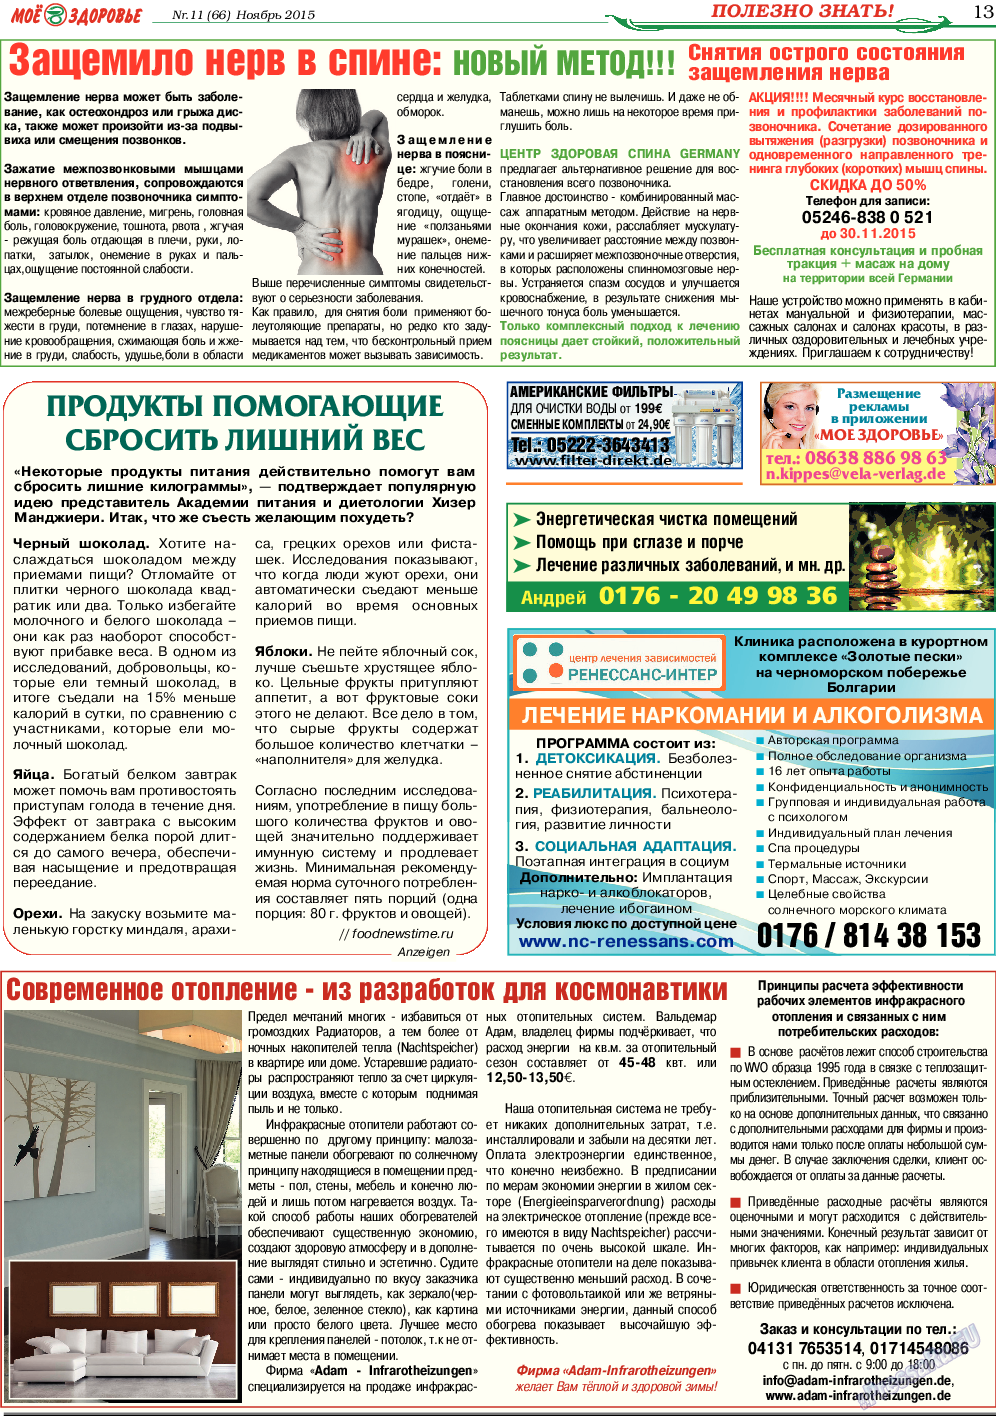 Кругозор, газета. 2015 №11 стр.13